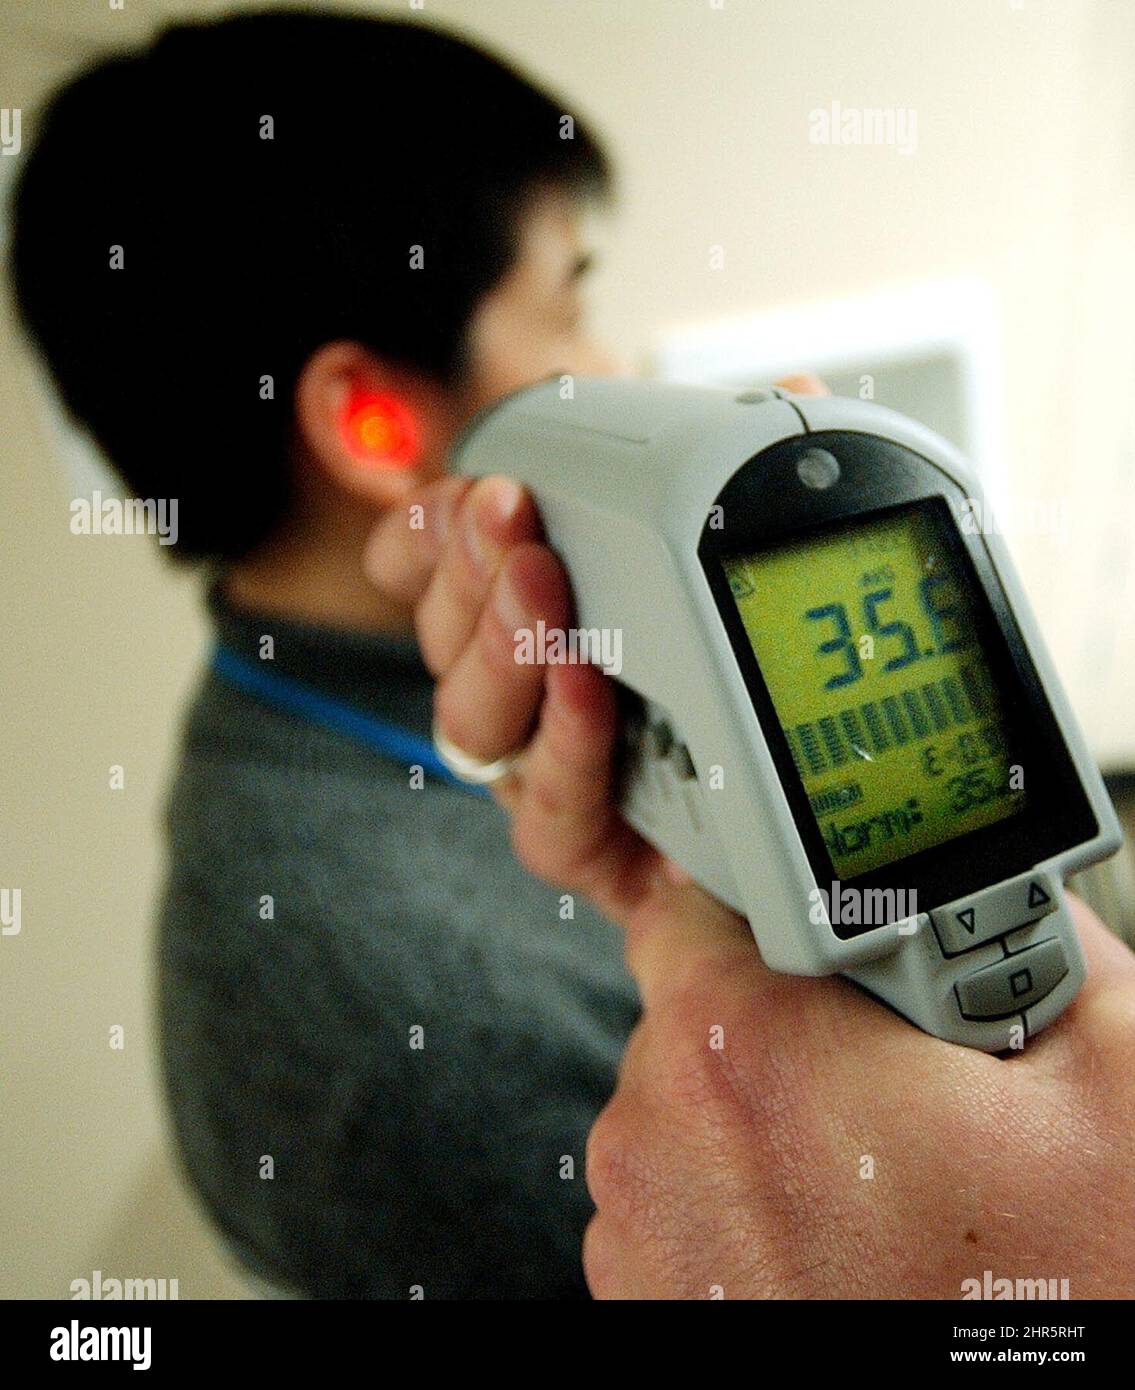 Pa PHOTOS/CP - Reino Unido SÓLO PARA USO: Sueyun Chen, técnico de  investigación del Mount Sinai Hospital, ha tomado su temperatura con un  termómetro de punto infrarrojo sin contacto (punto rojo en